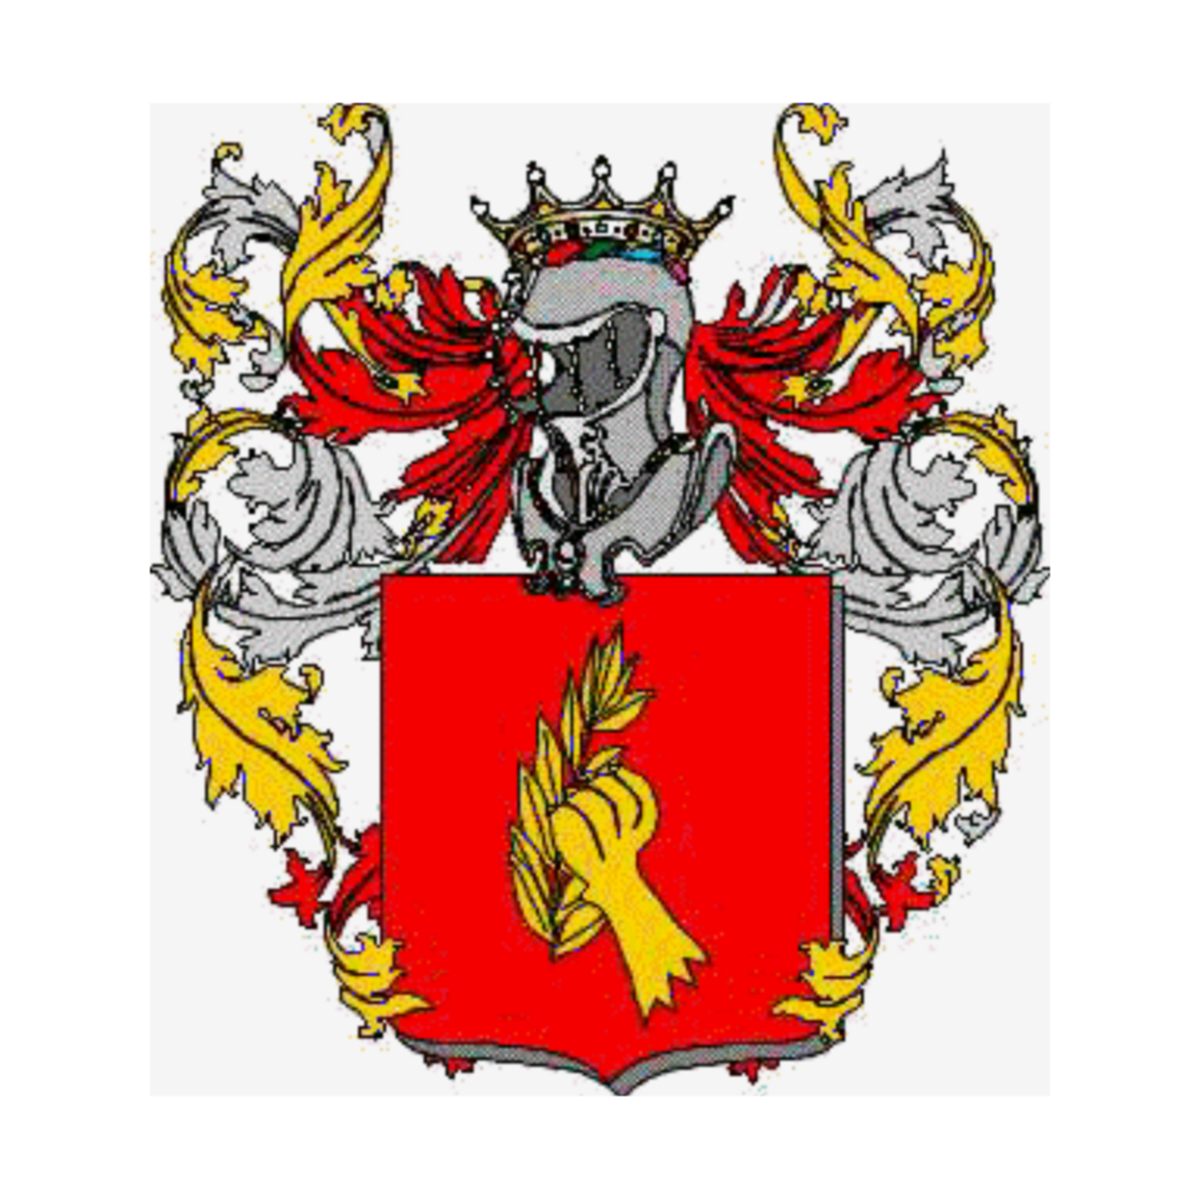 Escudo de la familiaPerini Brancadori Ragnoni